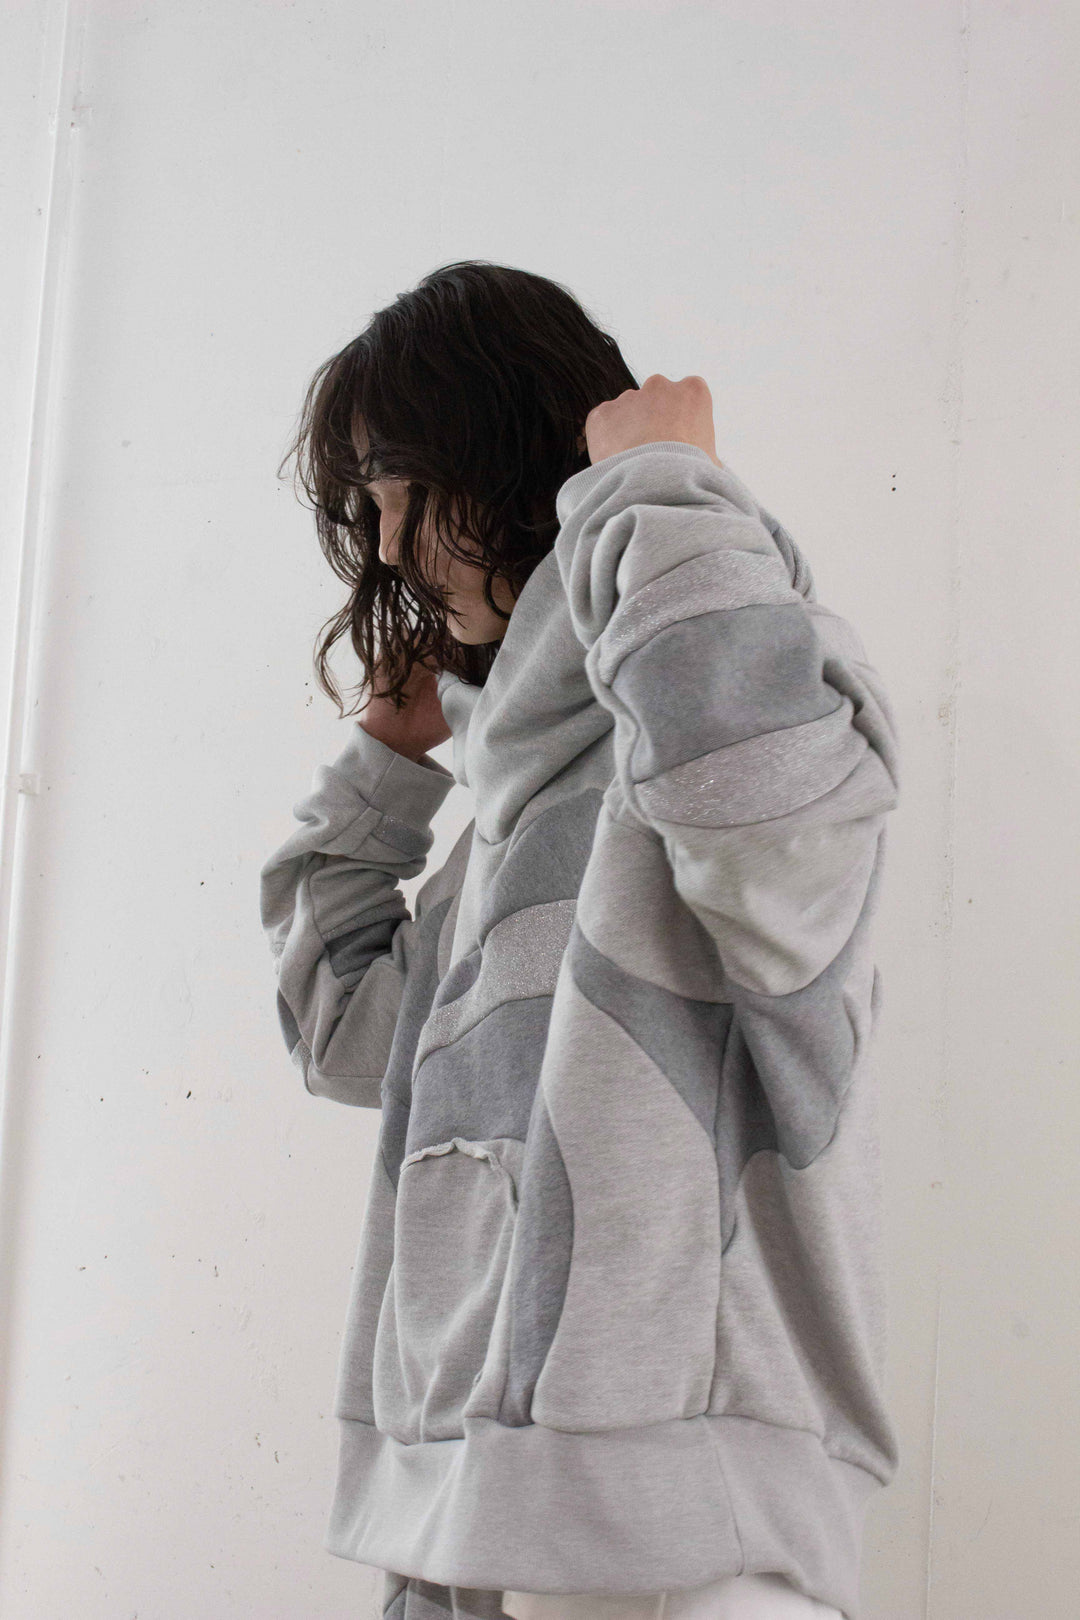 FLOW cross hoodie - Grey